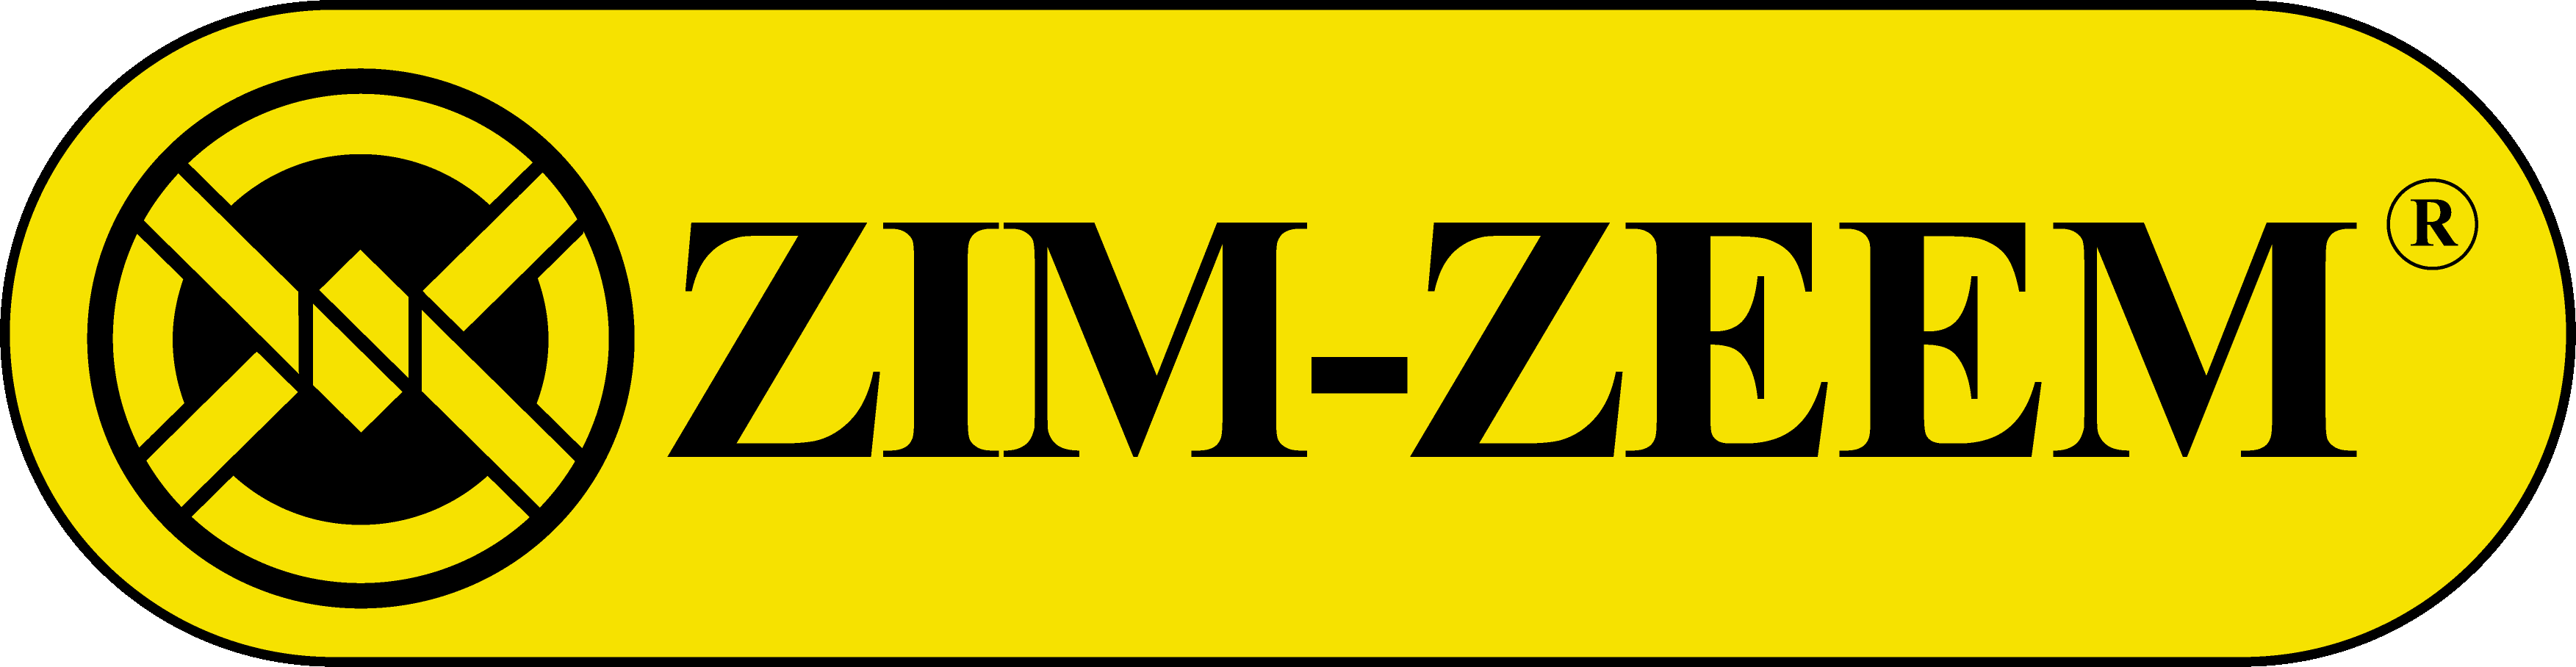 ZIM-ZEEM Tool box